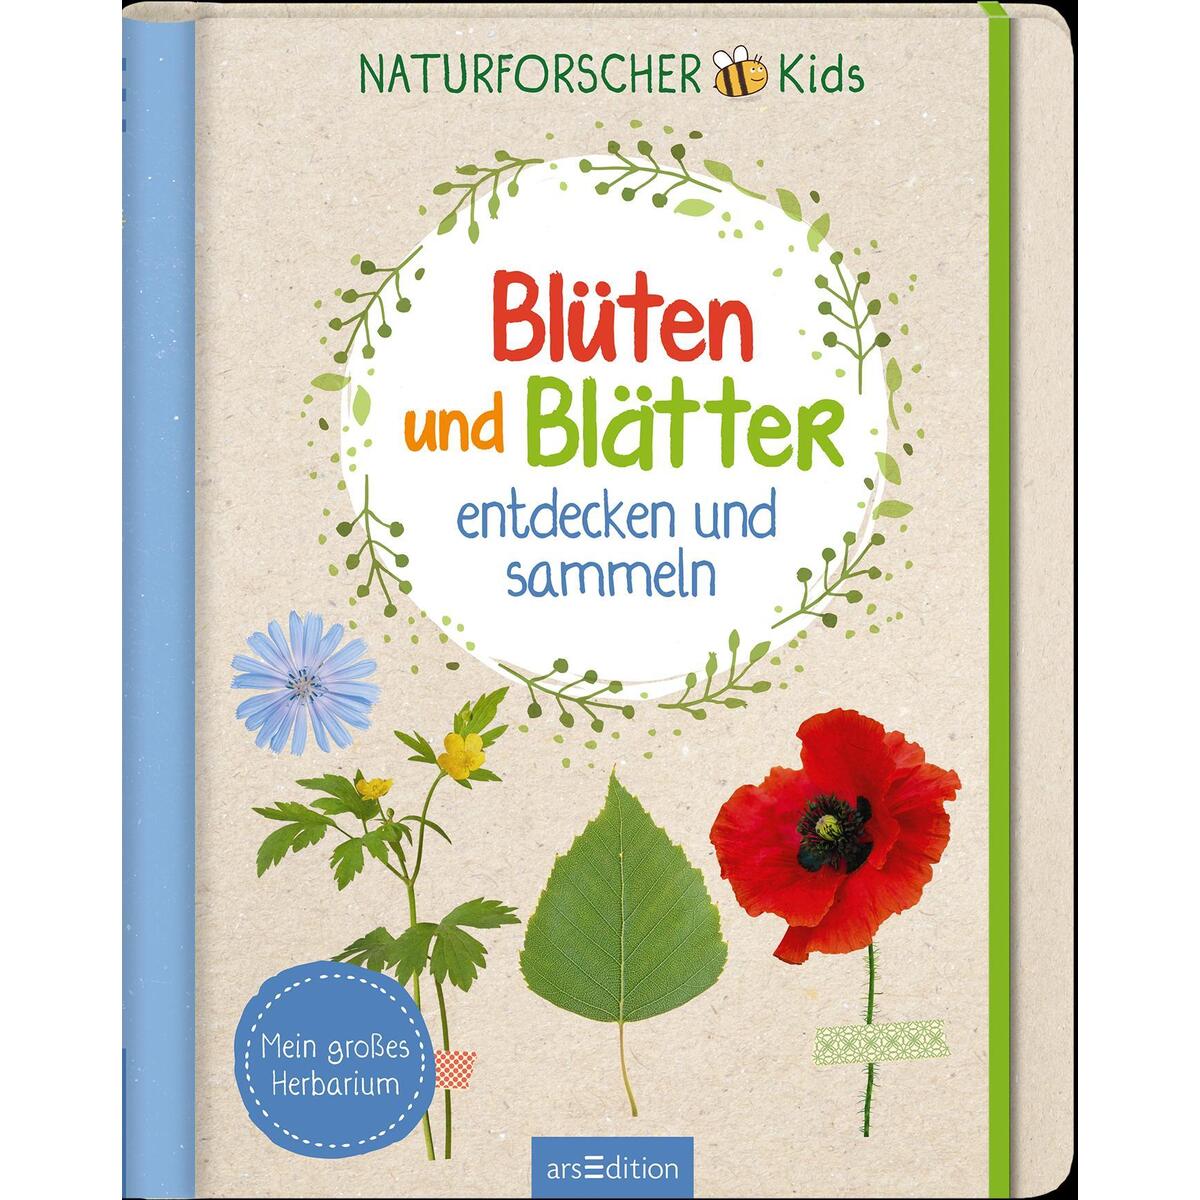 Naturforscher Kids »Blüten und Blätter« von Ars Edition GmbH